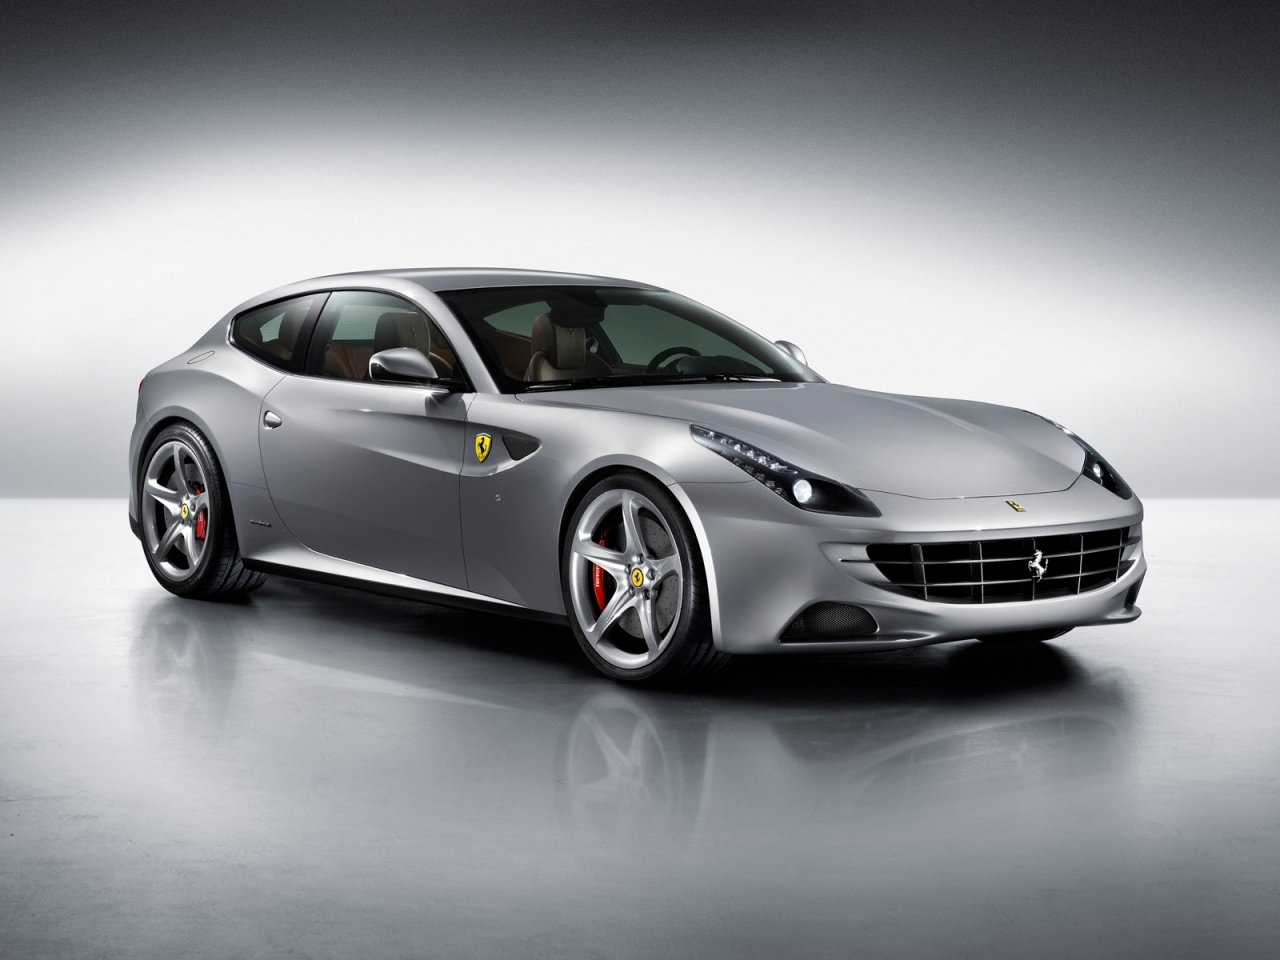 2012 Ferrari FF for 1280 x 960 resolution